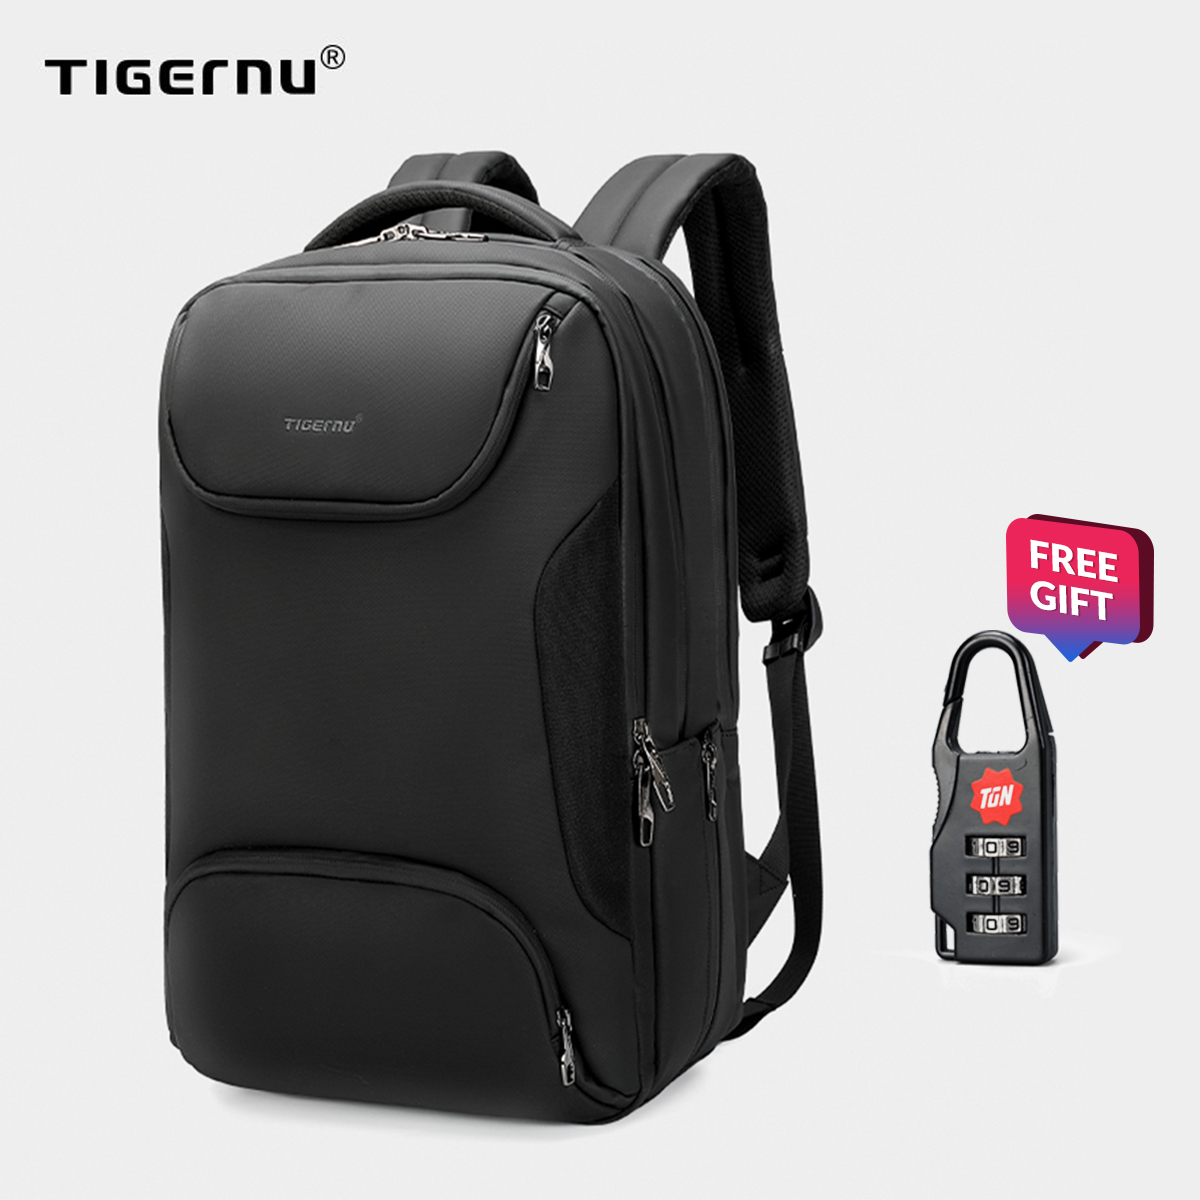 【NEW】Tigernu TPUกระเป๋าสะพายนักธุรกิจเดินทางRFIDแล็ปท็อปกันน้ำ (15.6 '') 3976